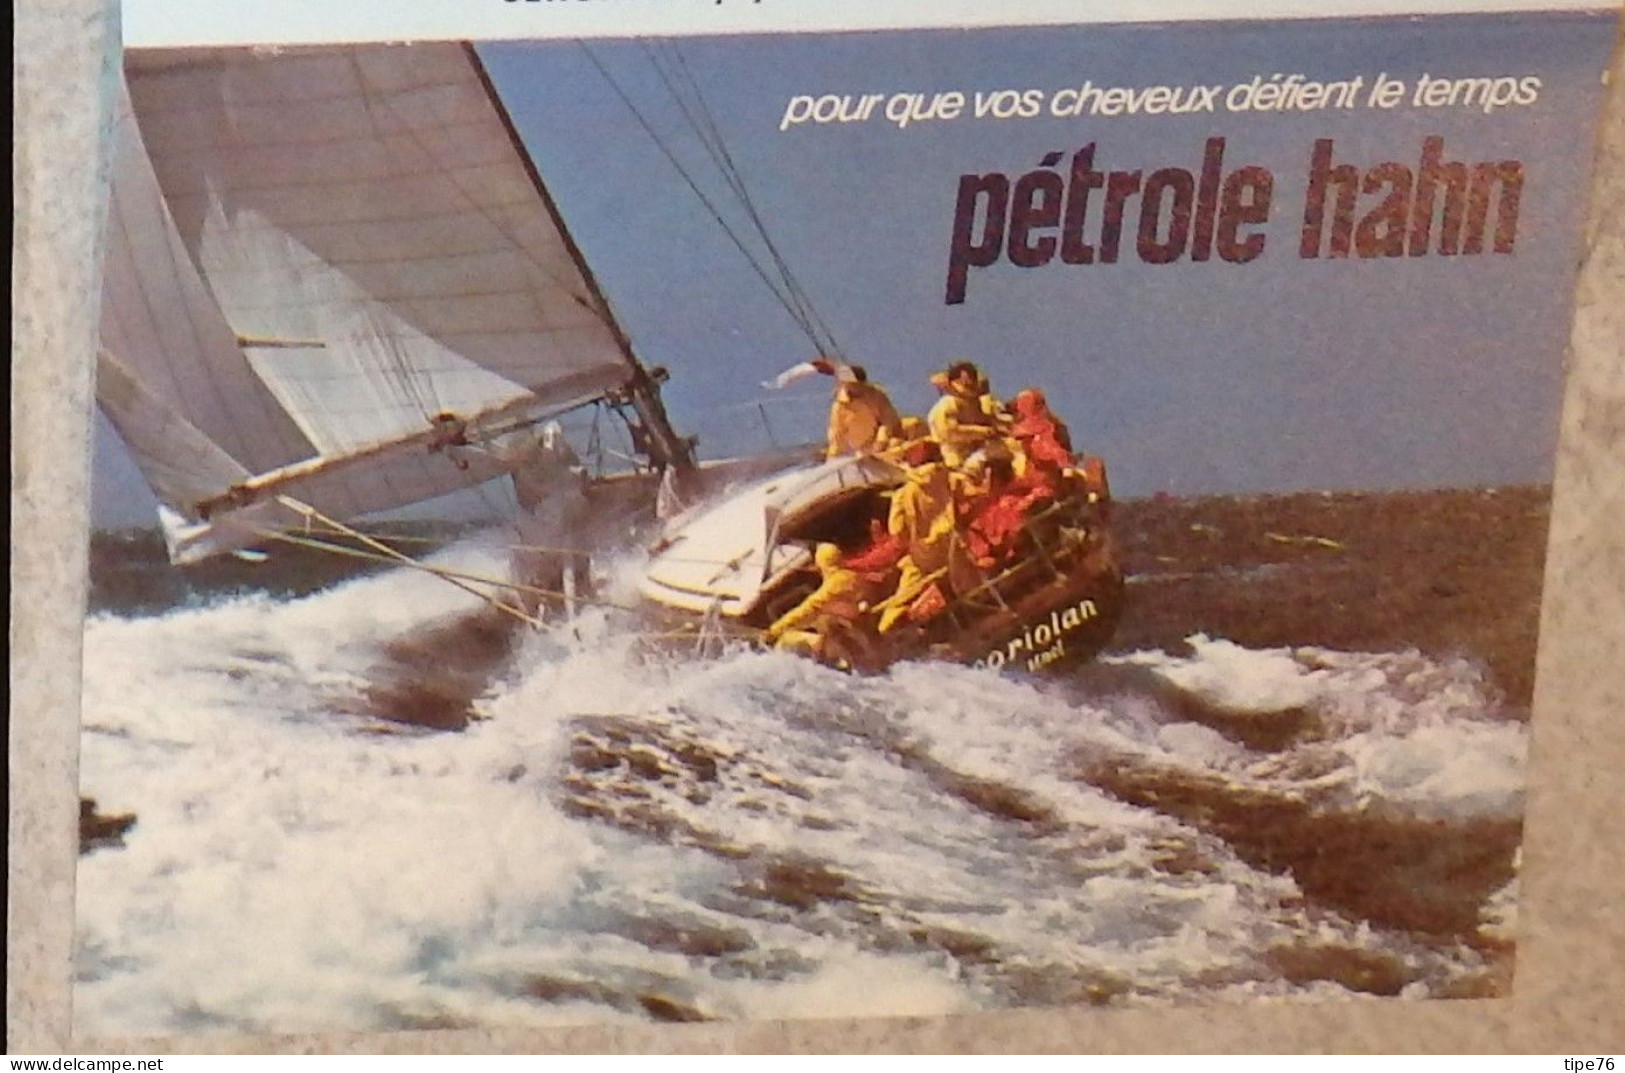 Petit Calendrier De Poche 1978 Pétrole Hahn Lotions Et Shampooings - Vateau Voilier - Tamaño Pequeño : 1971-80